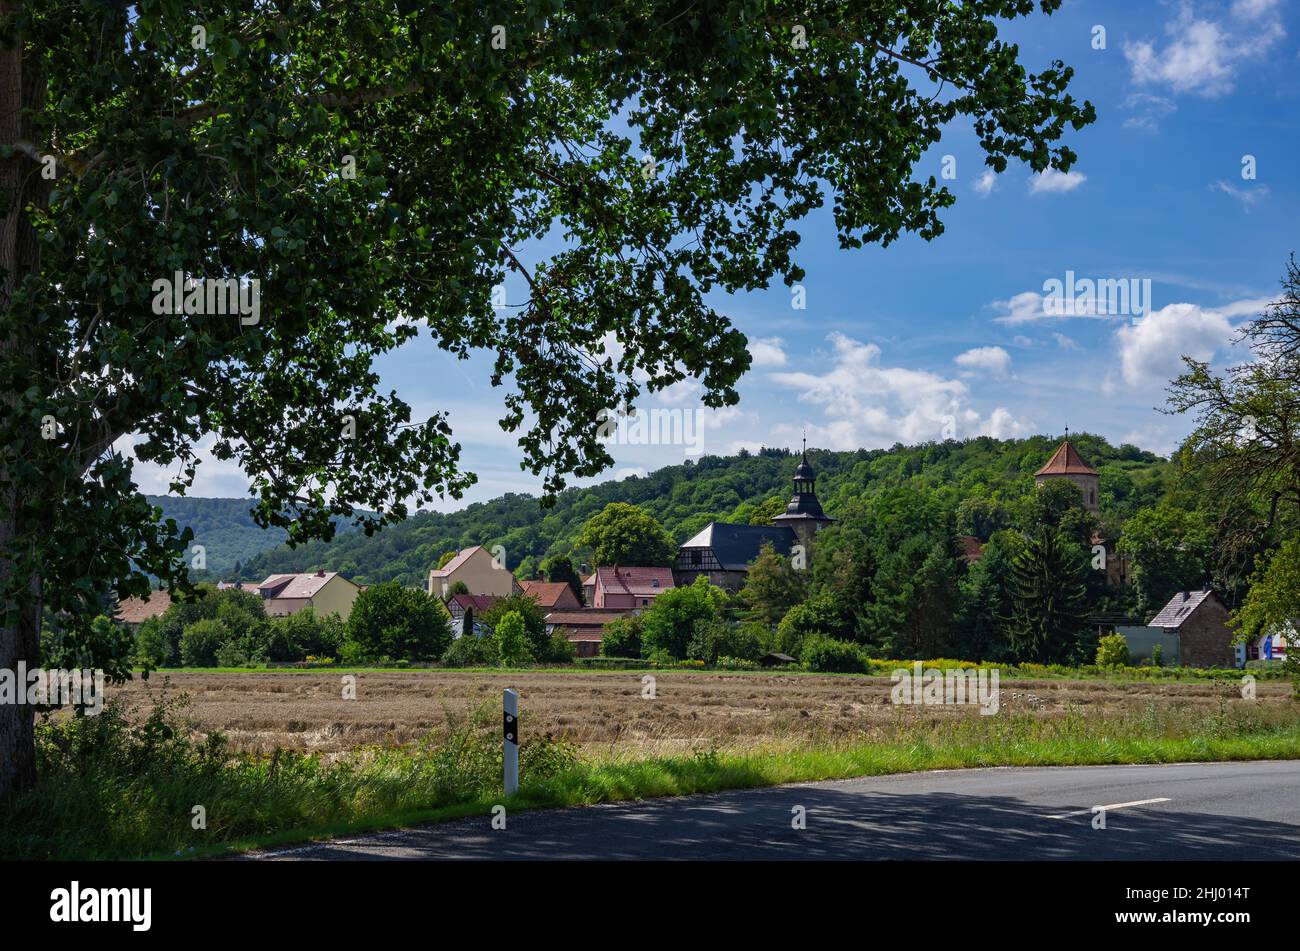 Ländliche Landschaft des Dorfes Göllingen in Thüringen, Kyffhäuser Region, Deutschland. Stockfoto